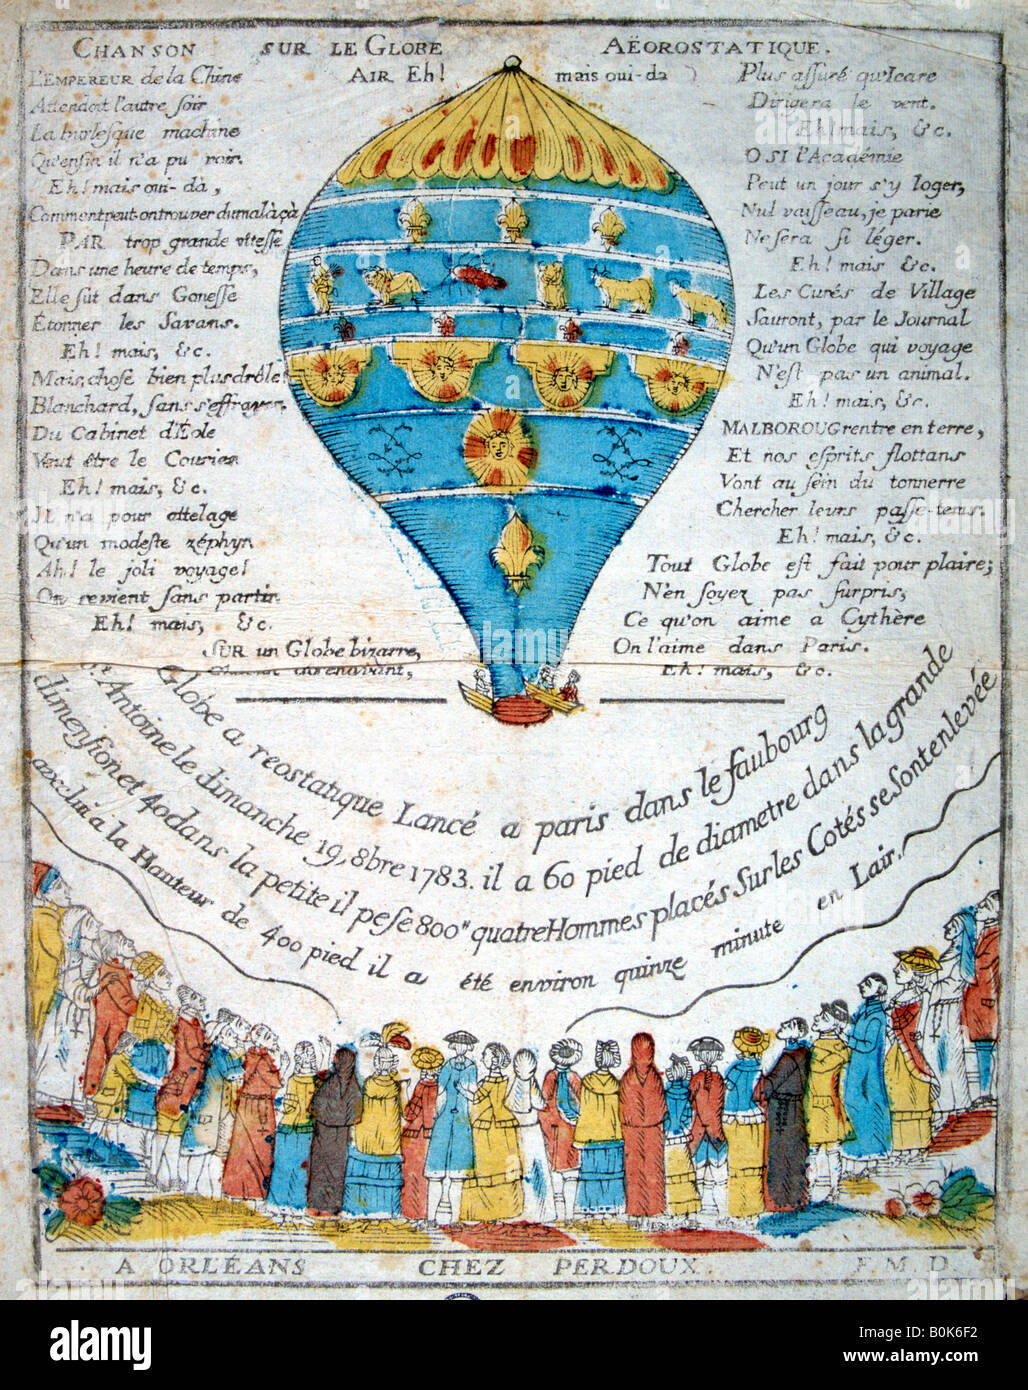 Lied auf der aerostatischen Kugel, aus dem 18. Jahrhundert. Künstler: unbekannt Stockfoto